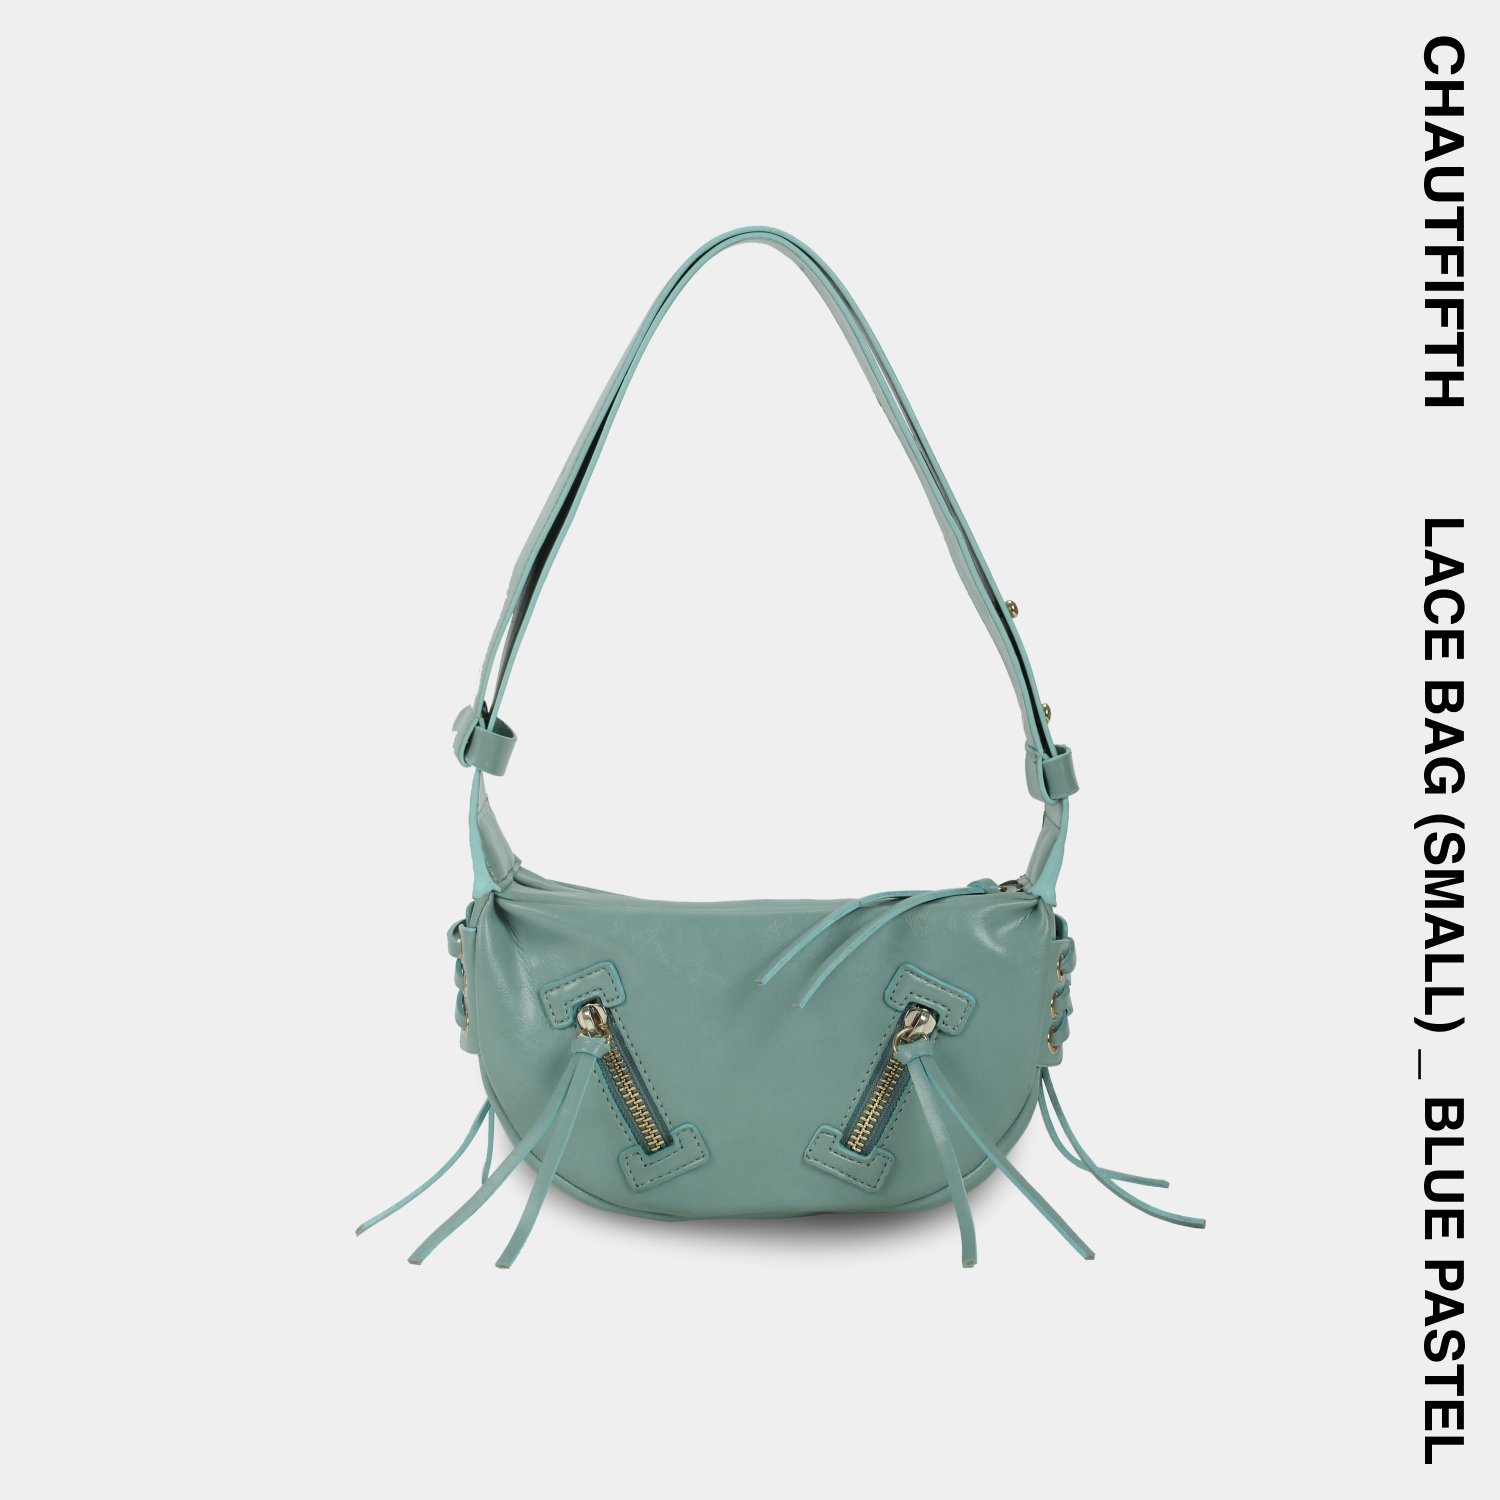 Túi xách LACE BAG size nhỏ (S) màu Xanh ngọc pastel - CHAUTFIFTH